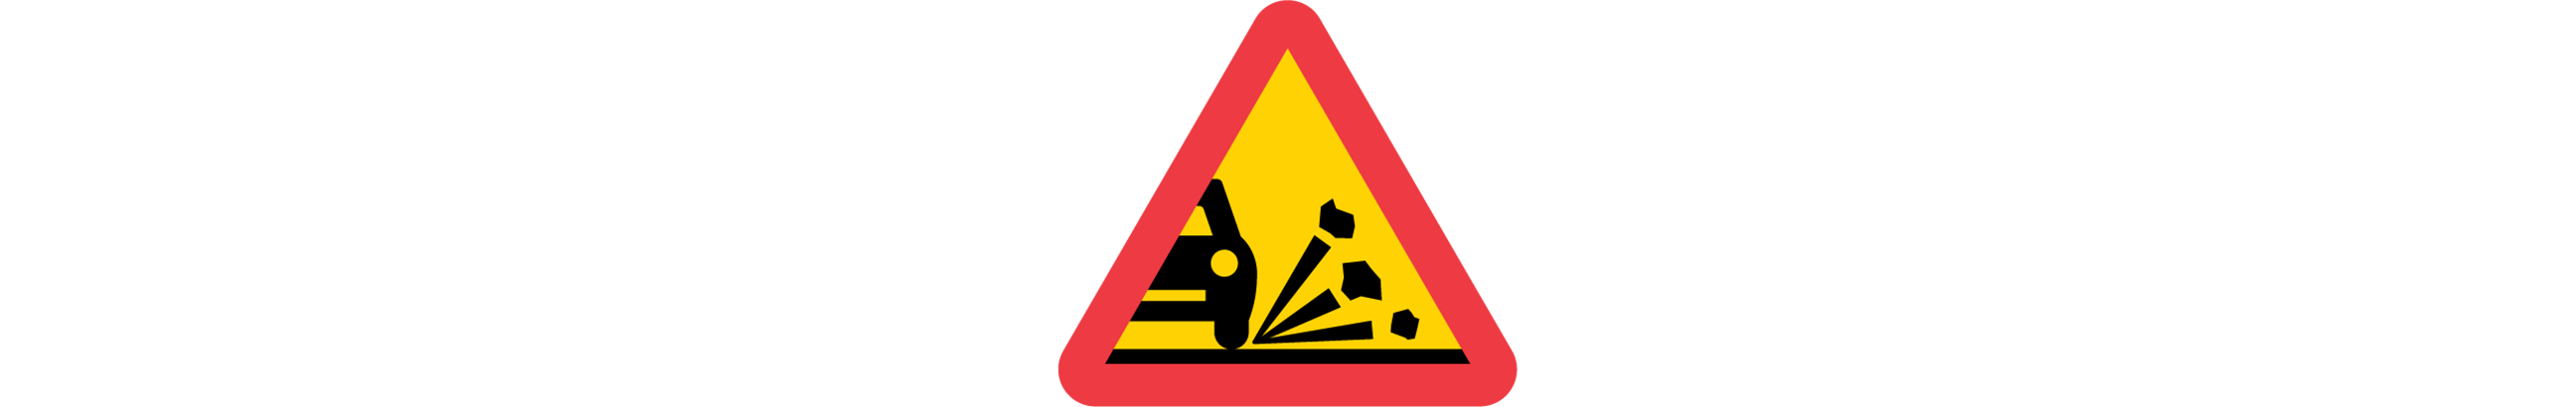 varning för stenskott